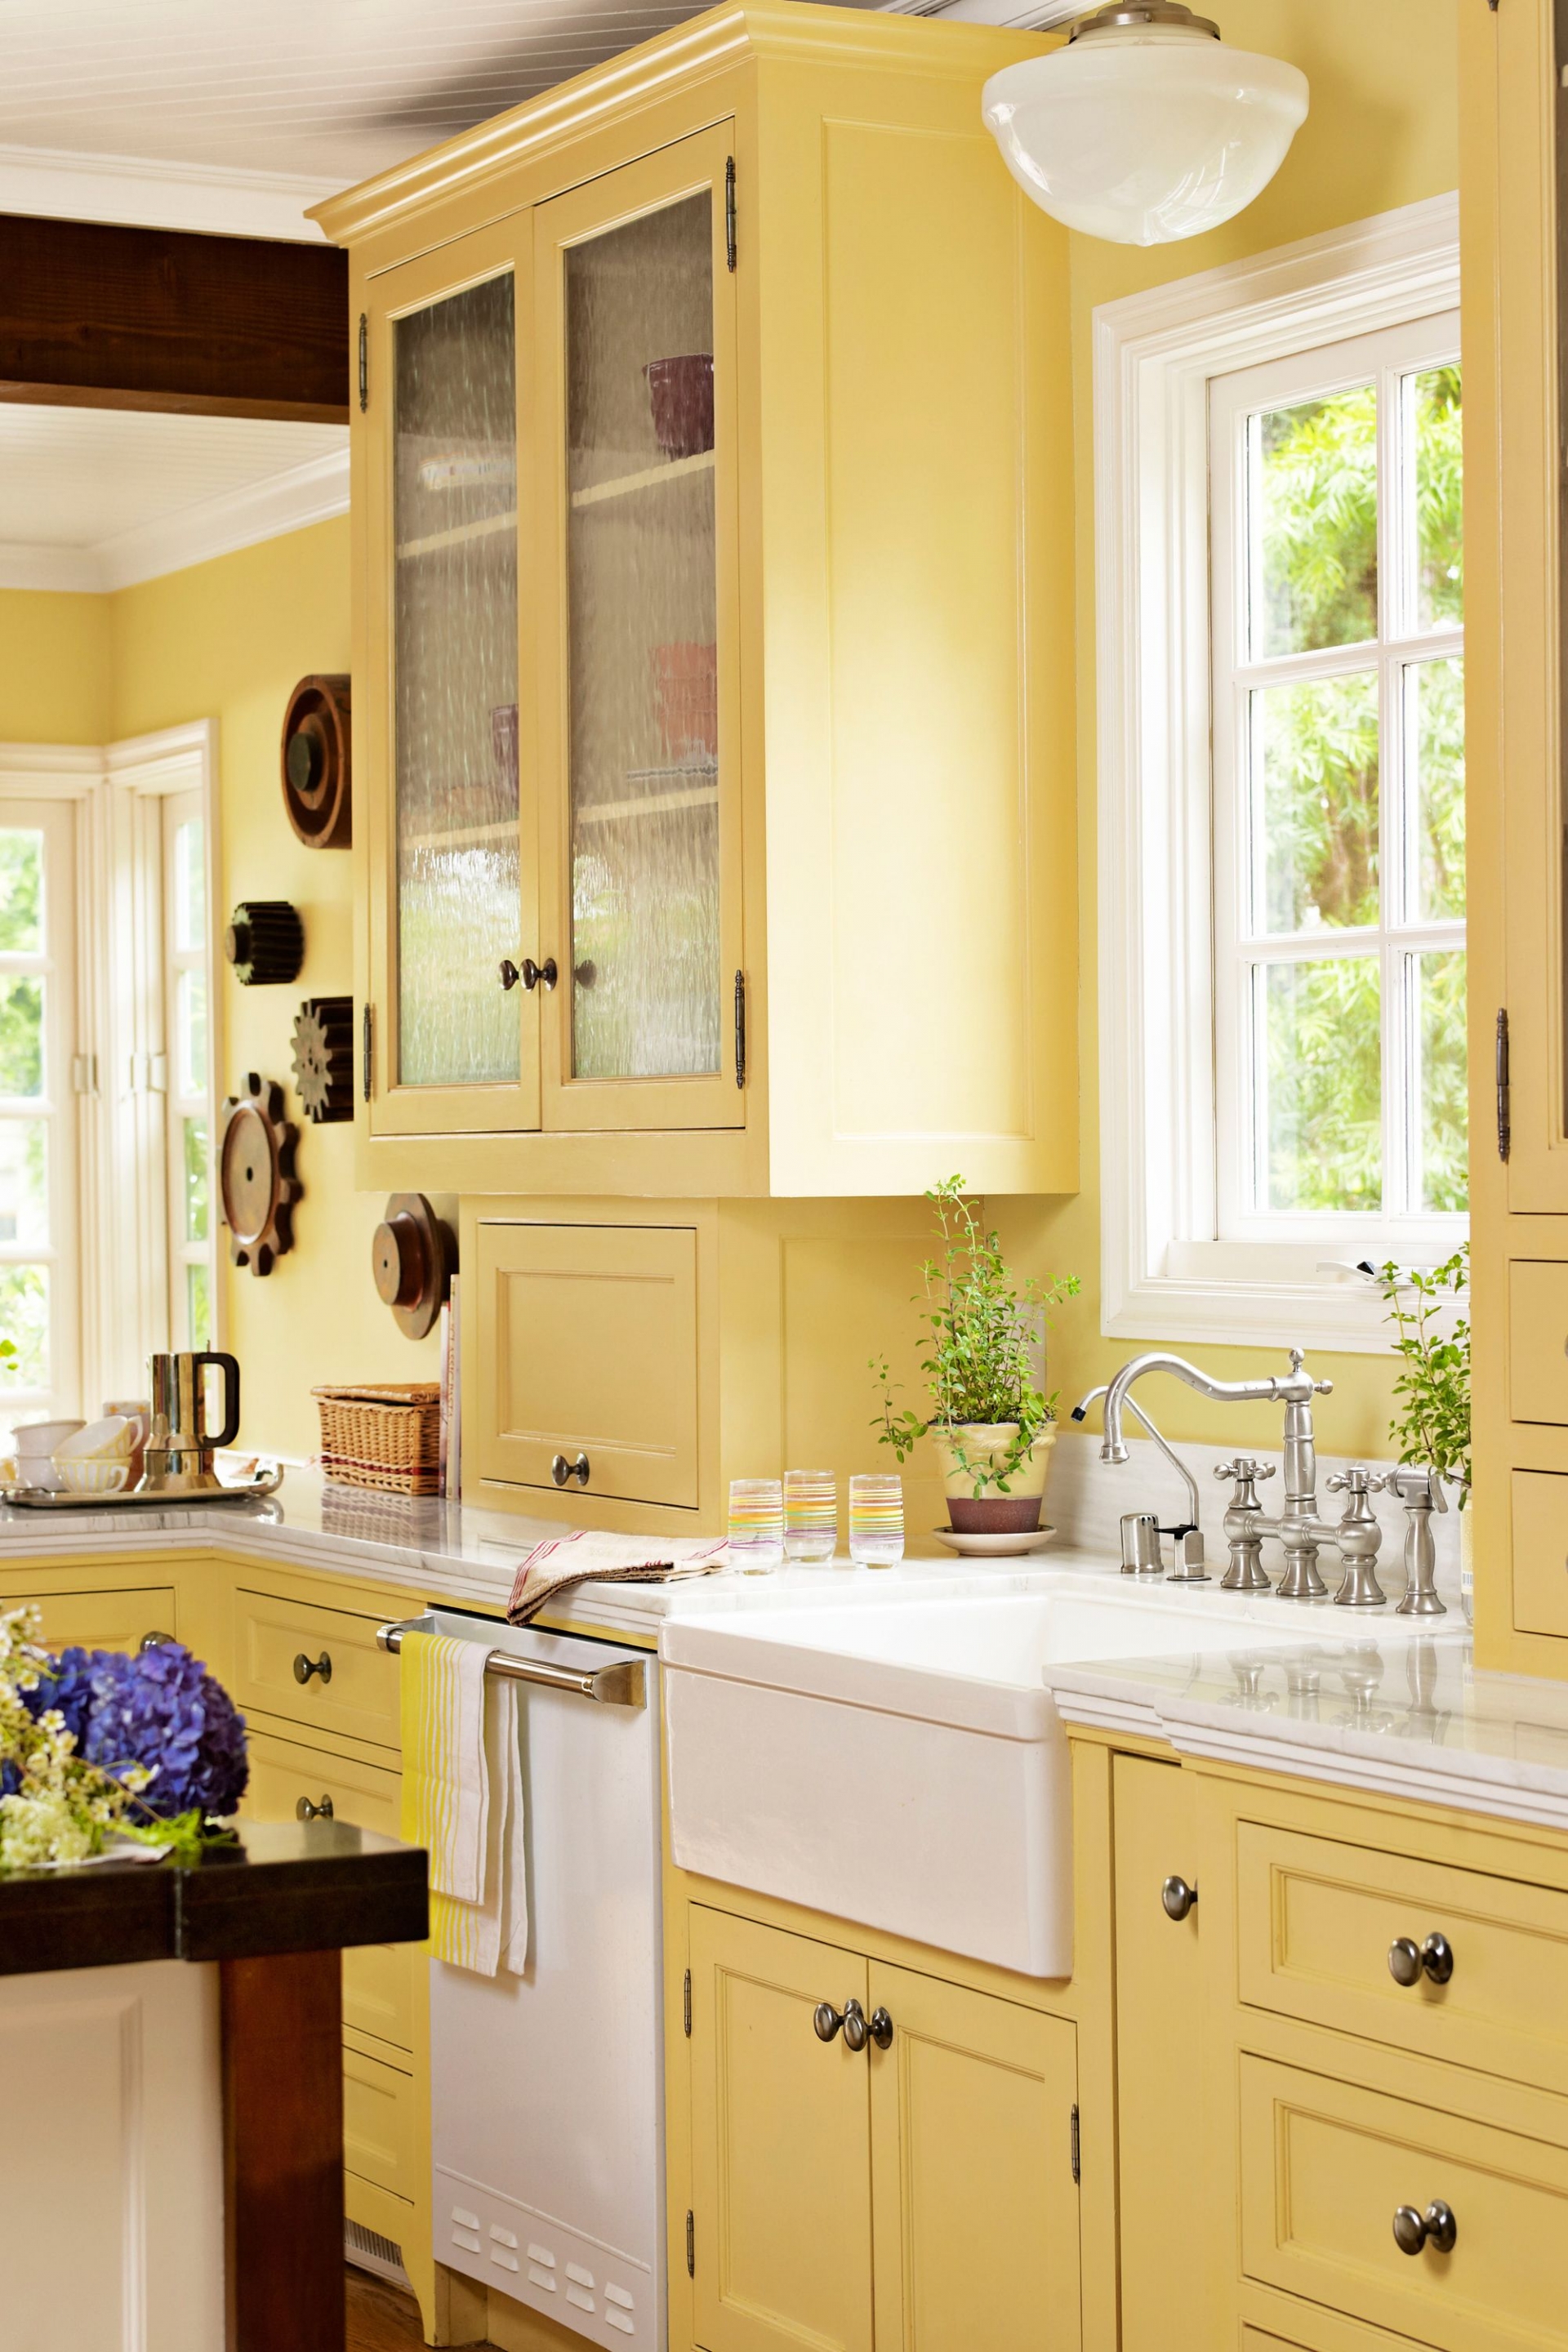 Tone màu vàng nhẹ nhàng của nắng mai, không quá chói chang sẽ thích hợp cho màu sơn tủ bếp và cả bức tường trong không gian nấu nướng. Sự kết hợp của màu vàng nhạt và gỗ tối màu sẽ mang lại một vẻ đẹp dịu dàng, mang mác cho phòng bếp.